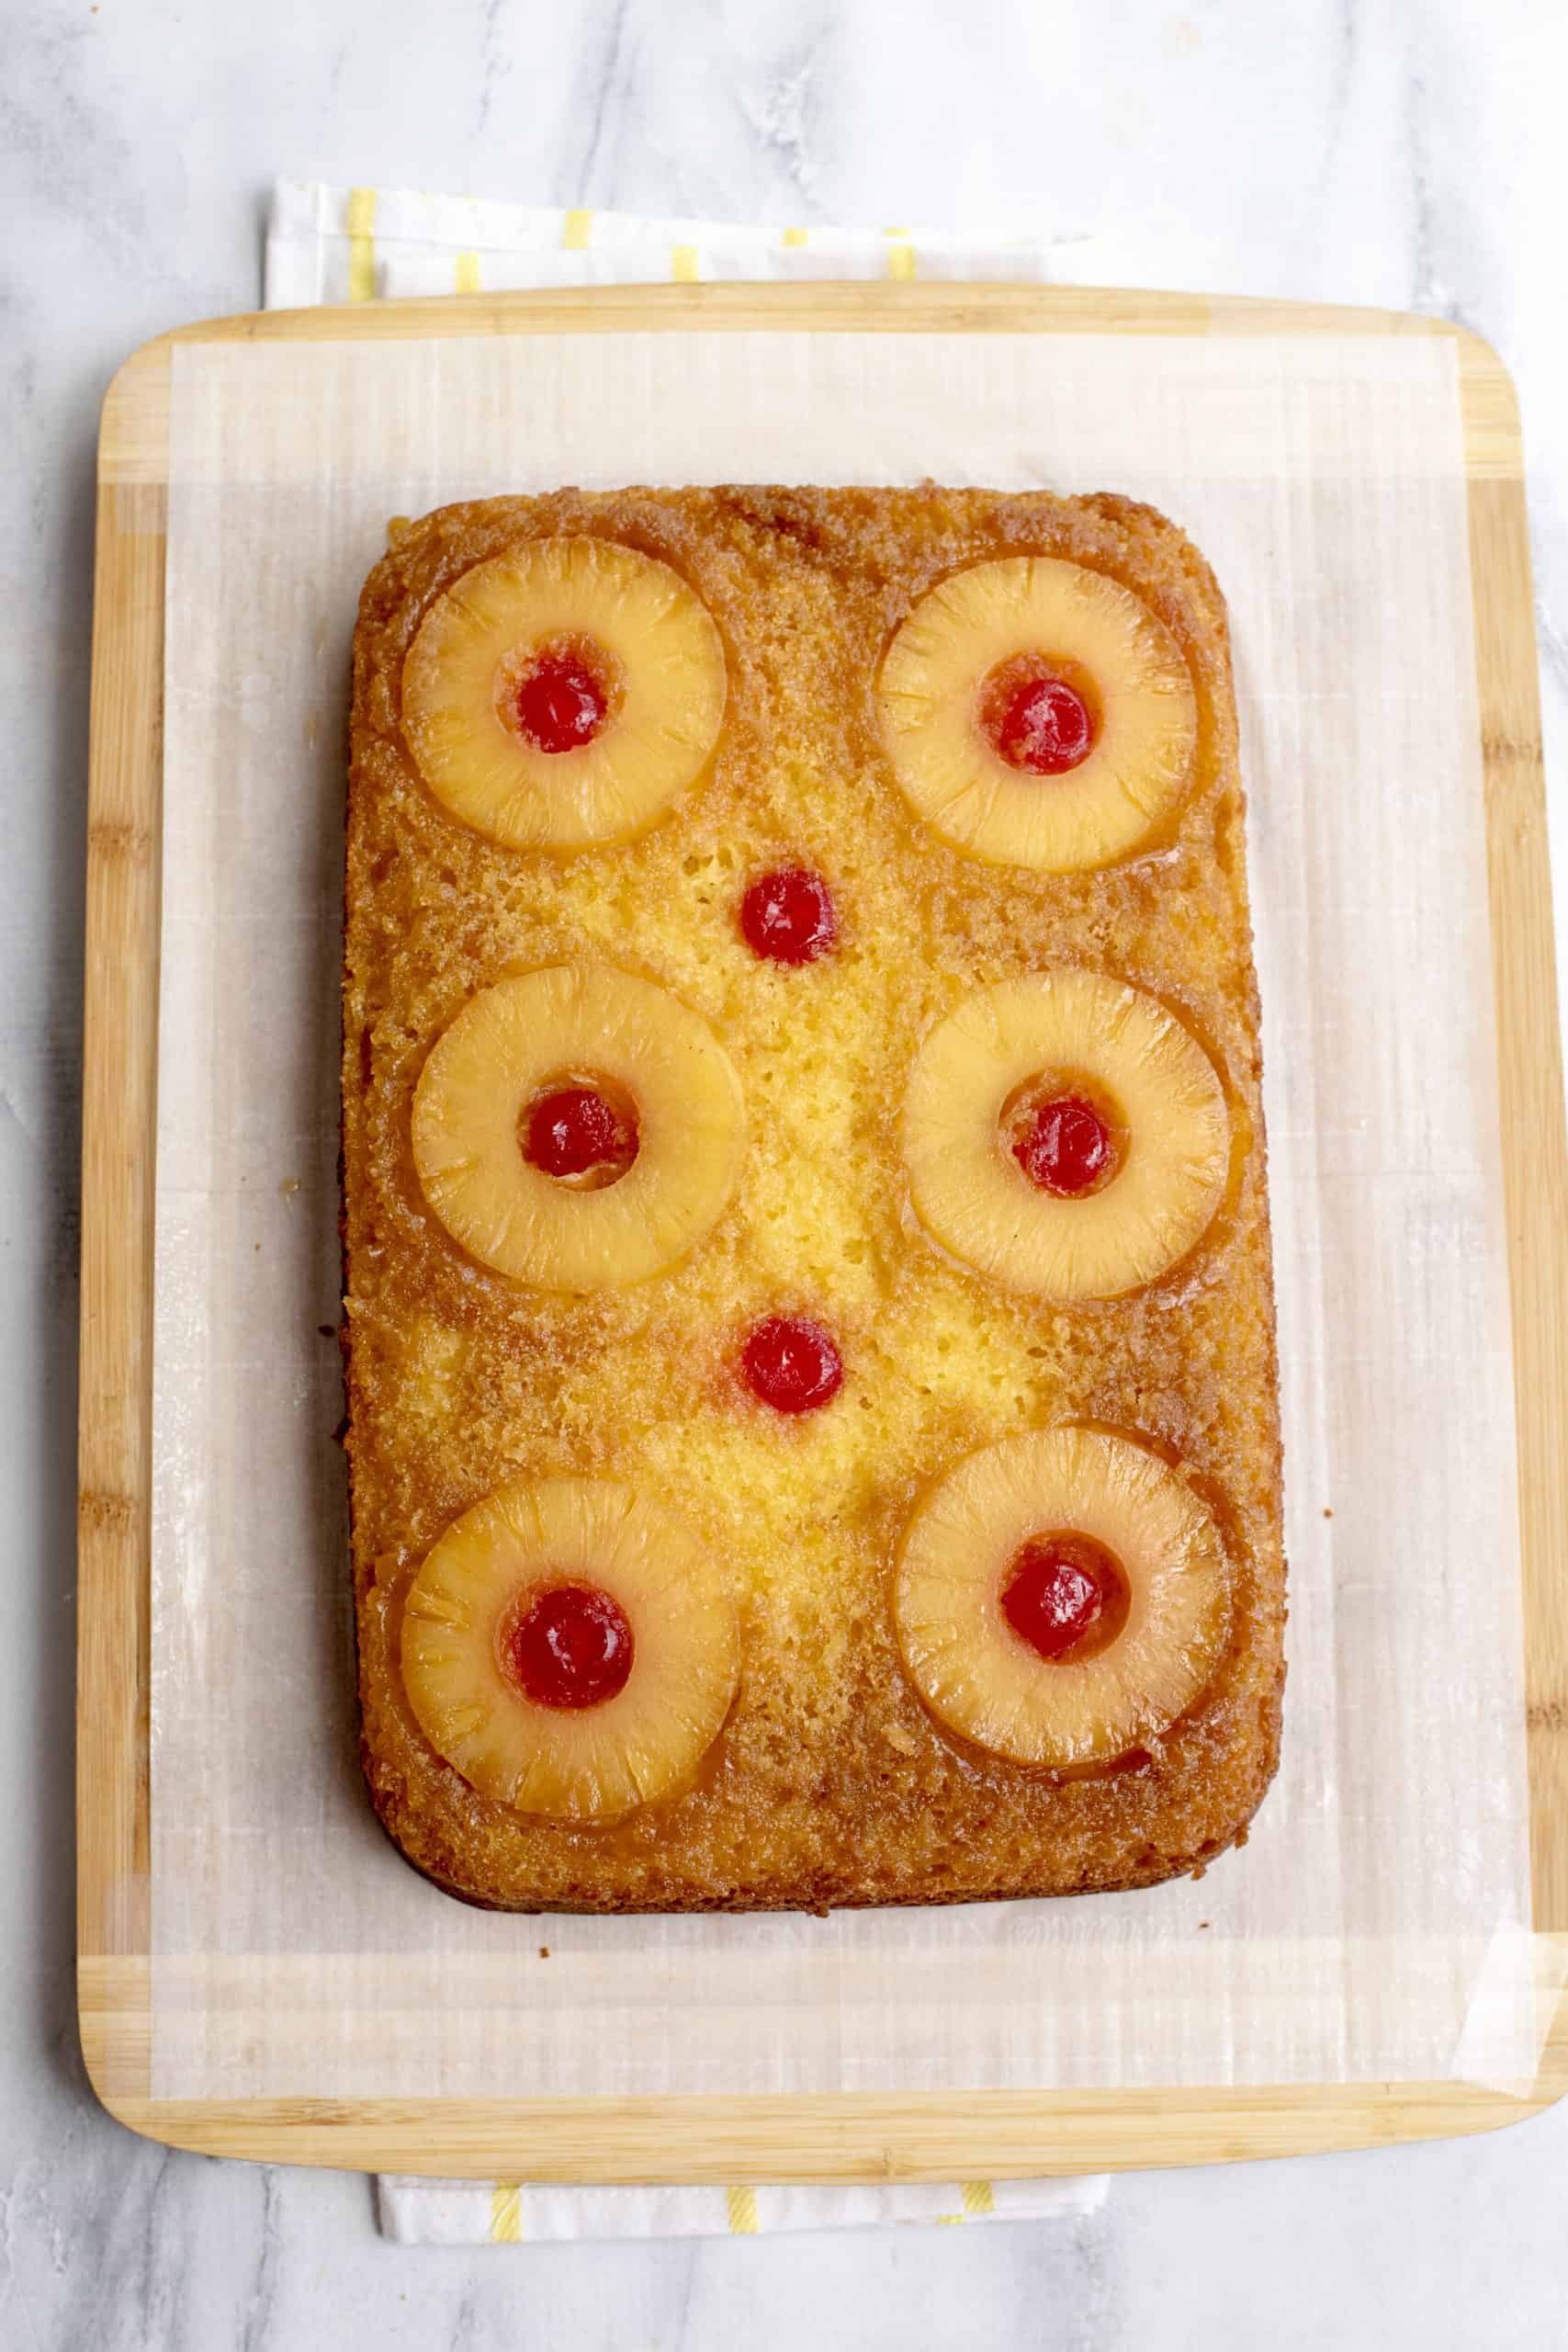 Baked easy pineapple upside-down cake.